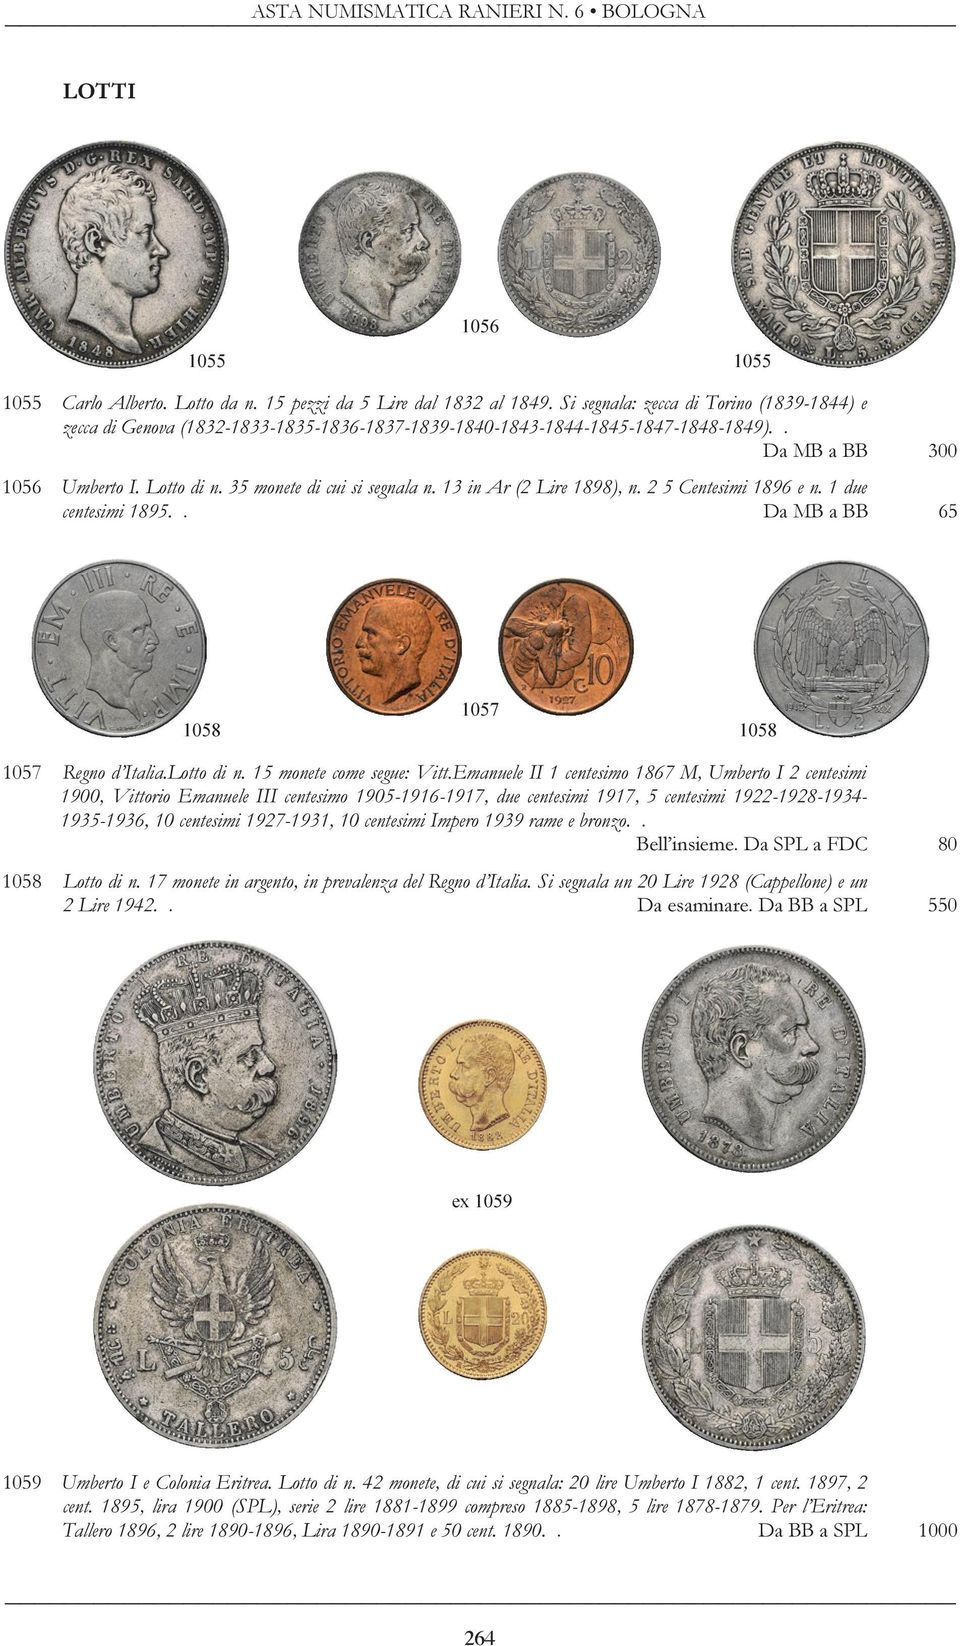 13 in Ar (2 Lire 1898), n. 2 5 Centesimi 1896 e n. 1 due centesimi 1895.. Da MB a BB 65 1058 1057 1058 1057 Regno d Italia.Lotto di n. 15 monete come segue: Vitt.